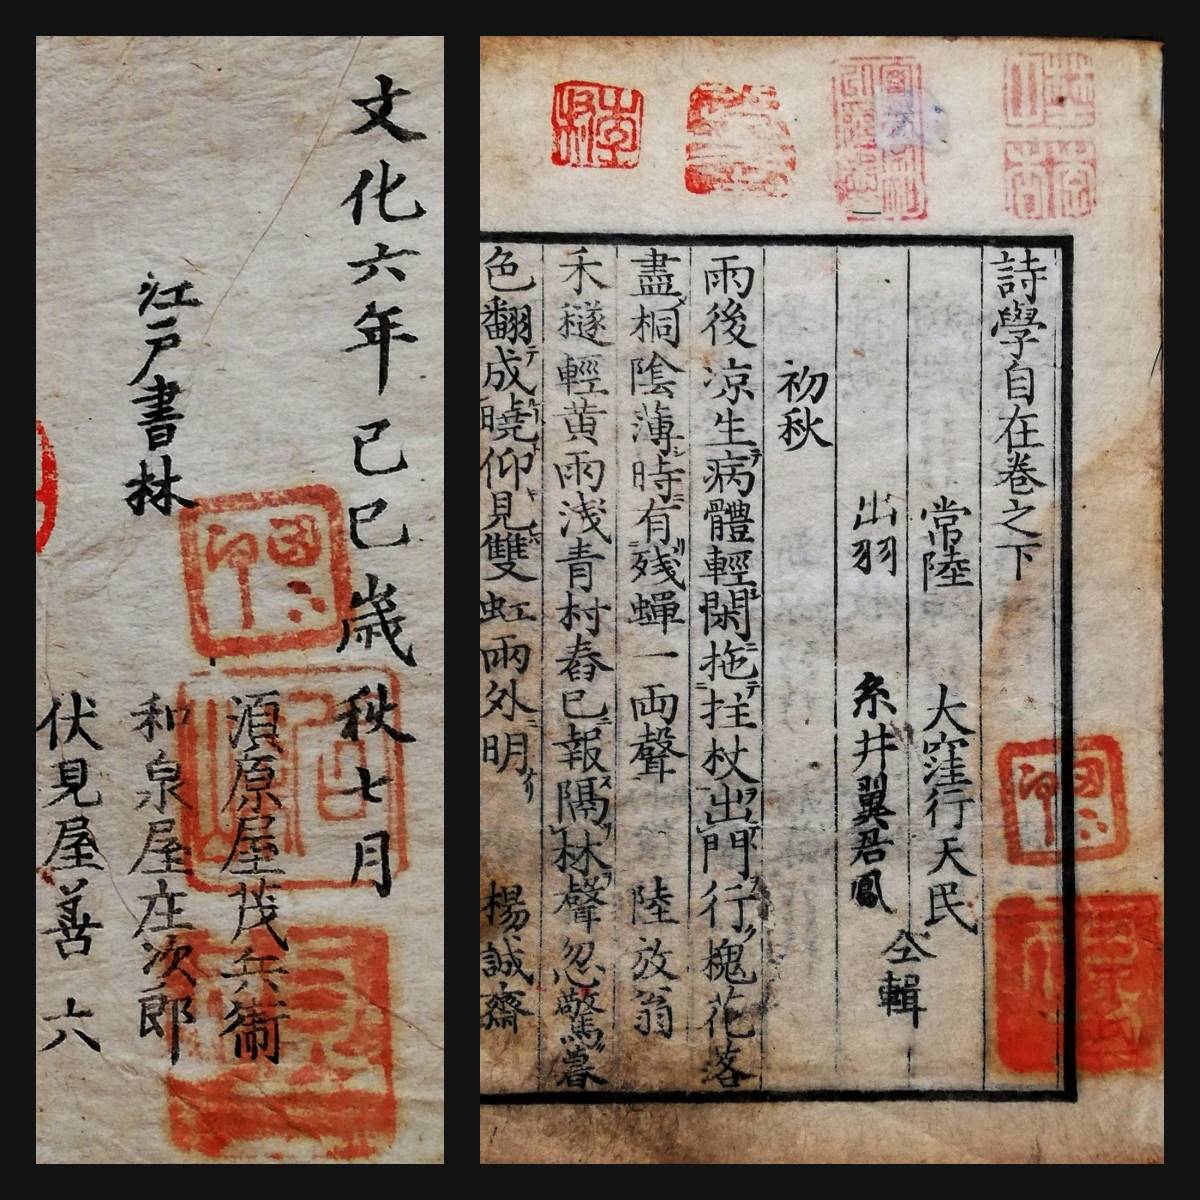 世界有名な 漢学 漢詩 朱印多数 2冊全 木版刷 214年前 詩学自在 1809年